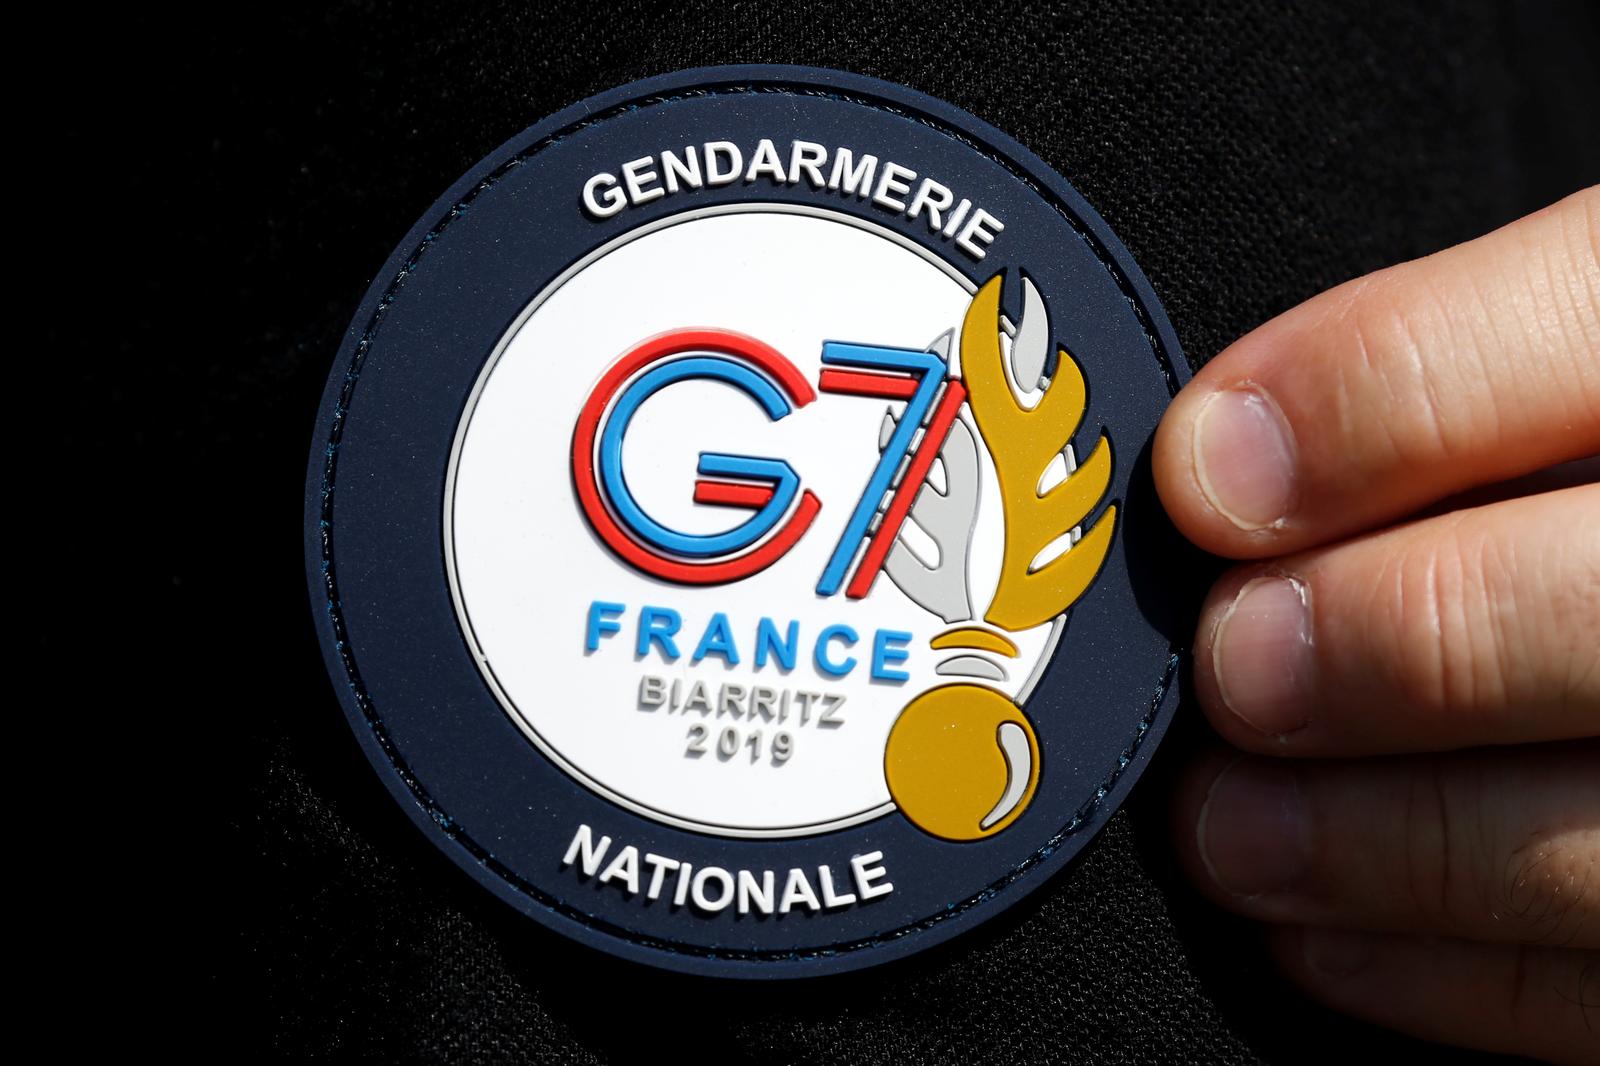 法国比亚里茨，一名巡警制服臂章上的G7峰会标识